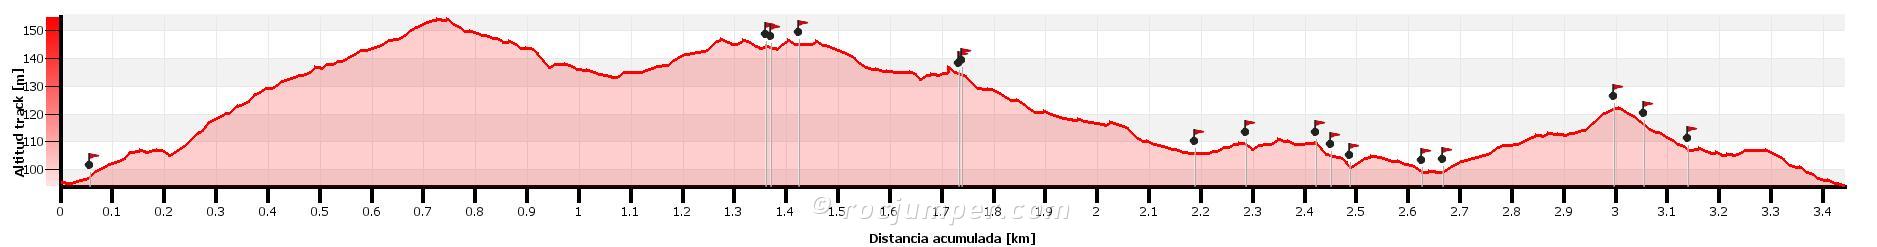 Altimetría - Escalada deportiva en la Cantera de Sant Jeroni de la Murtra - RocJumper